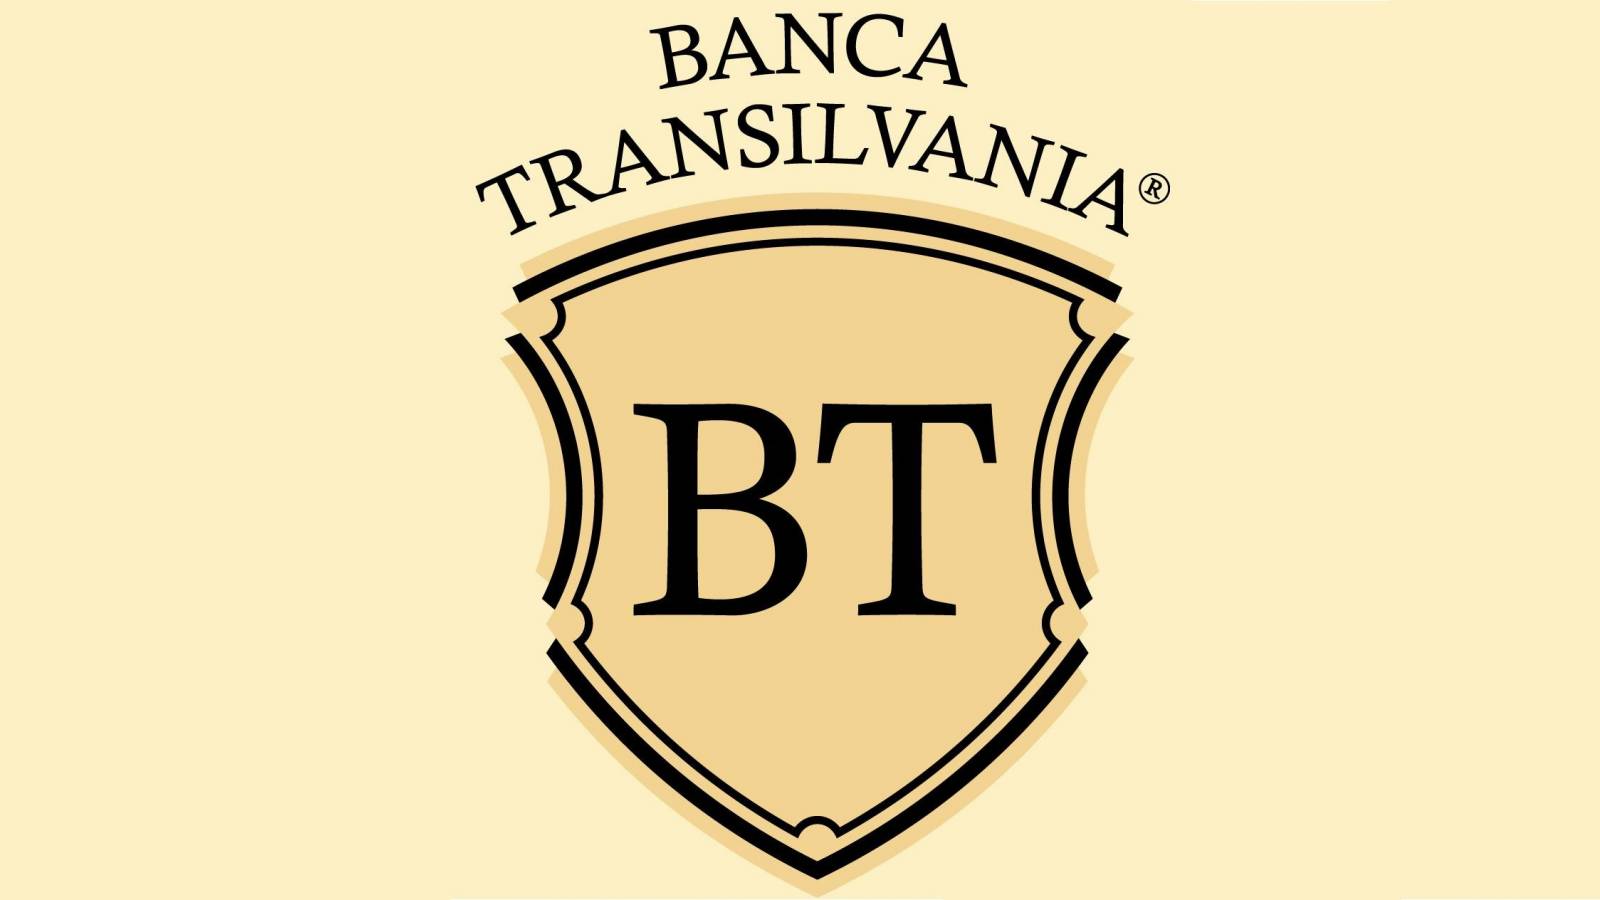 BANCA Transilvania MUSS die offizielle Nachricht kennen, die an Kunden gesendet wird